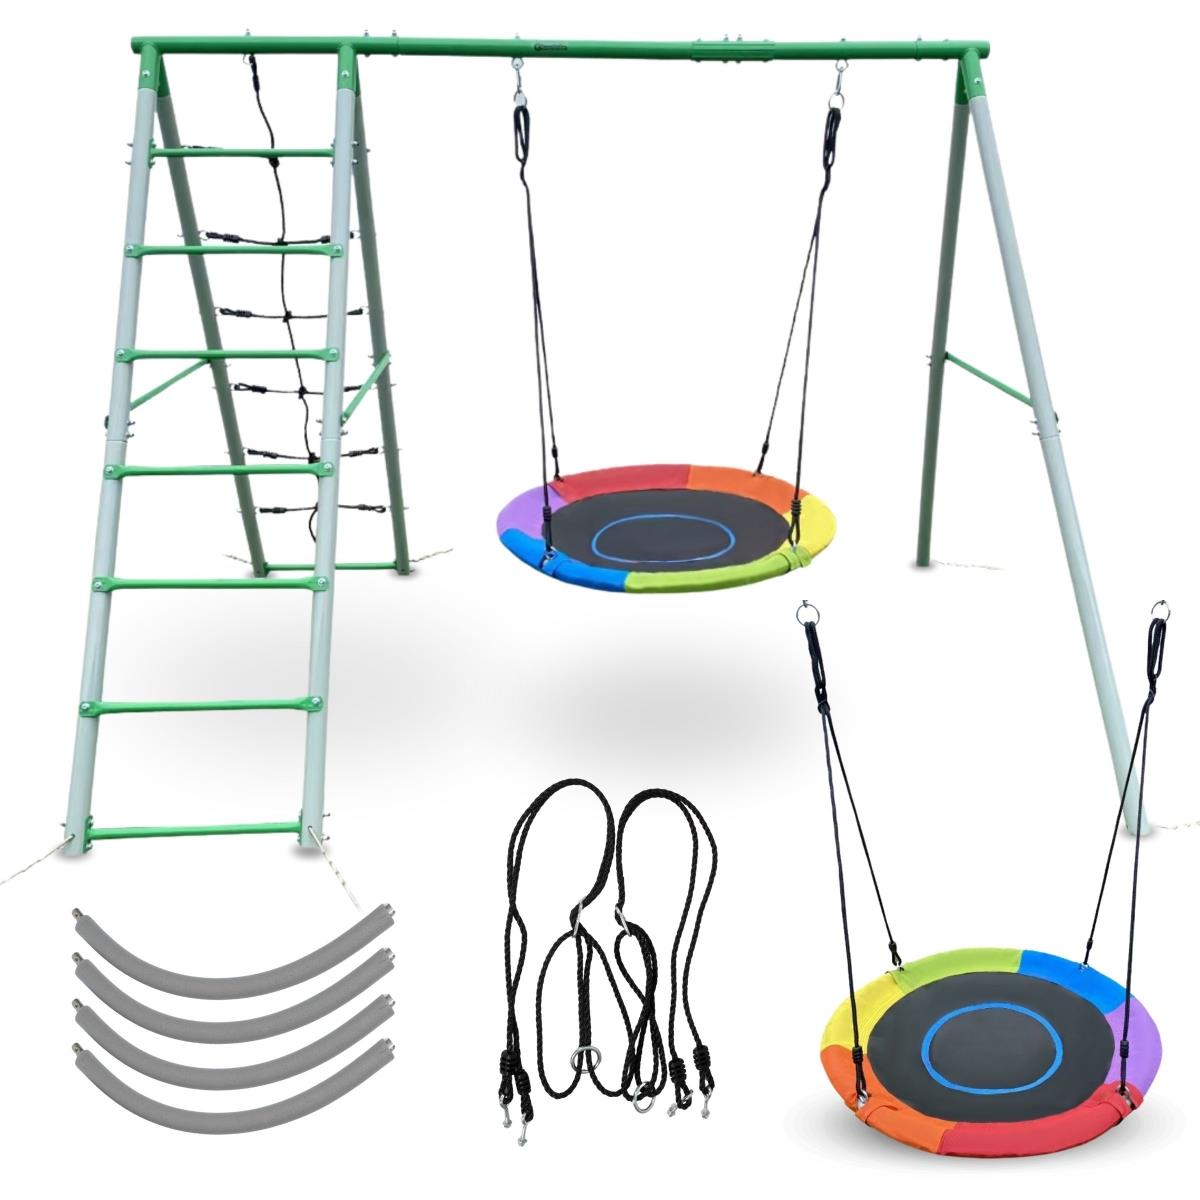 XL-Gartenspielplatz für Kinder mit Storchennestschaukel, Leiter und Kletternetz